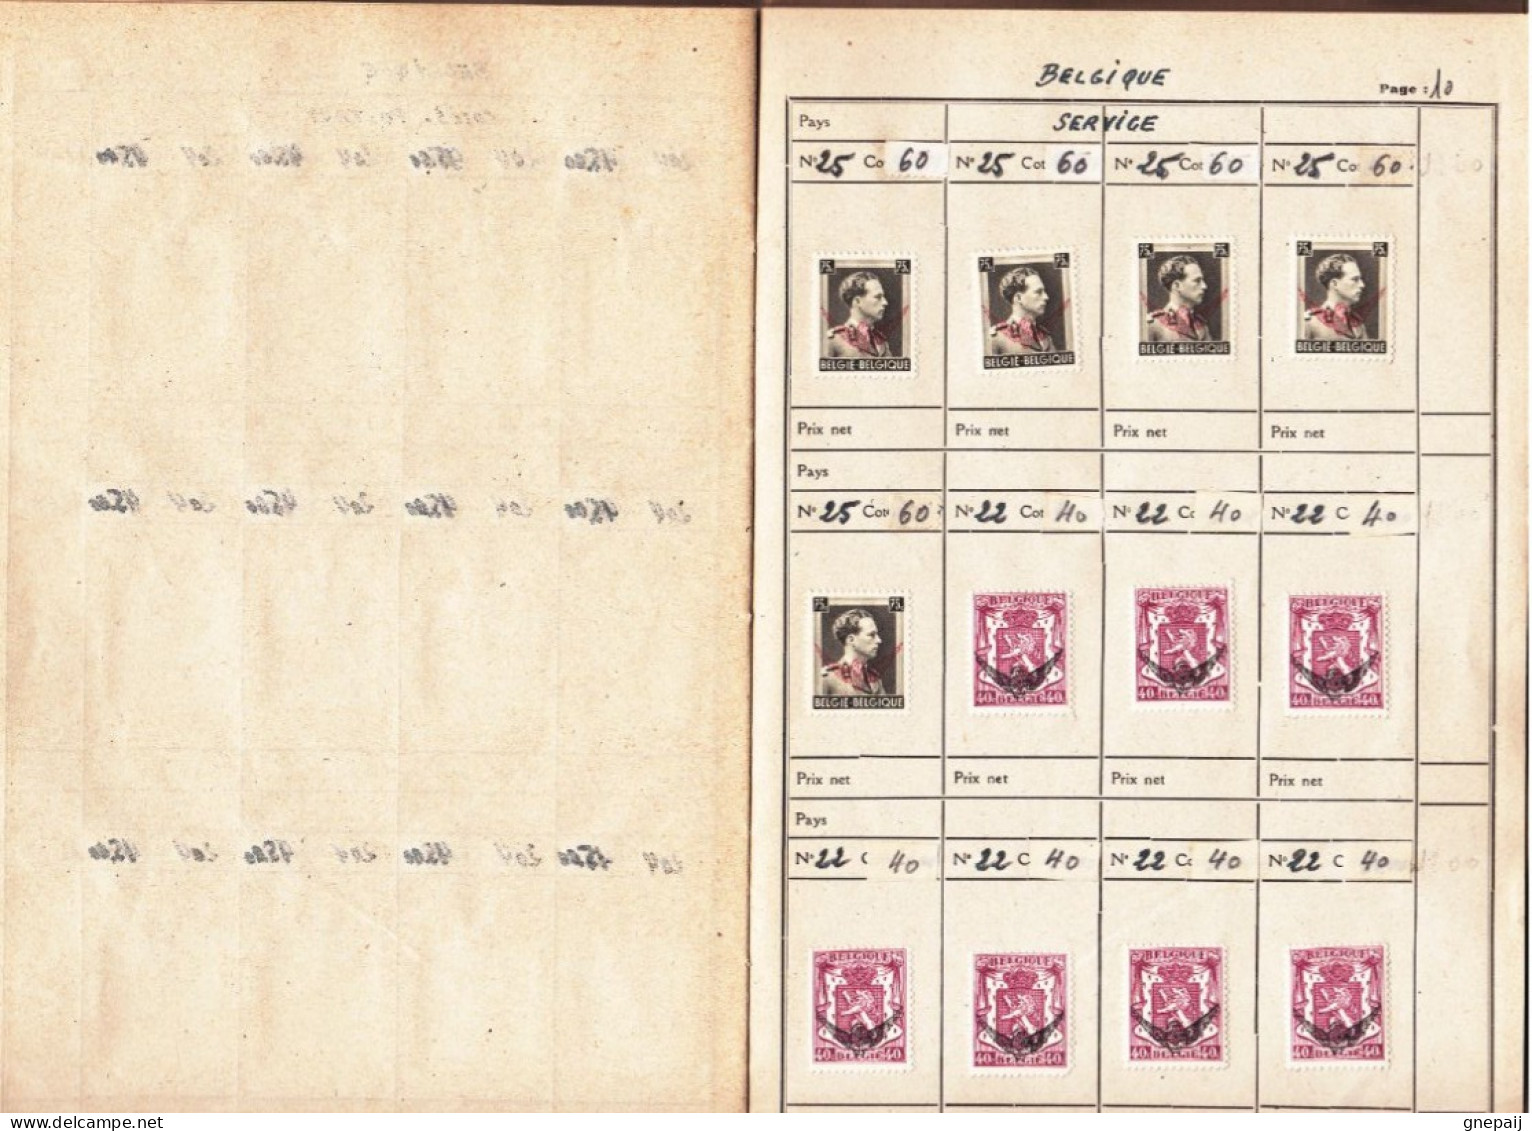 Lot timbres Belgique, Russie et Maroc anglais